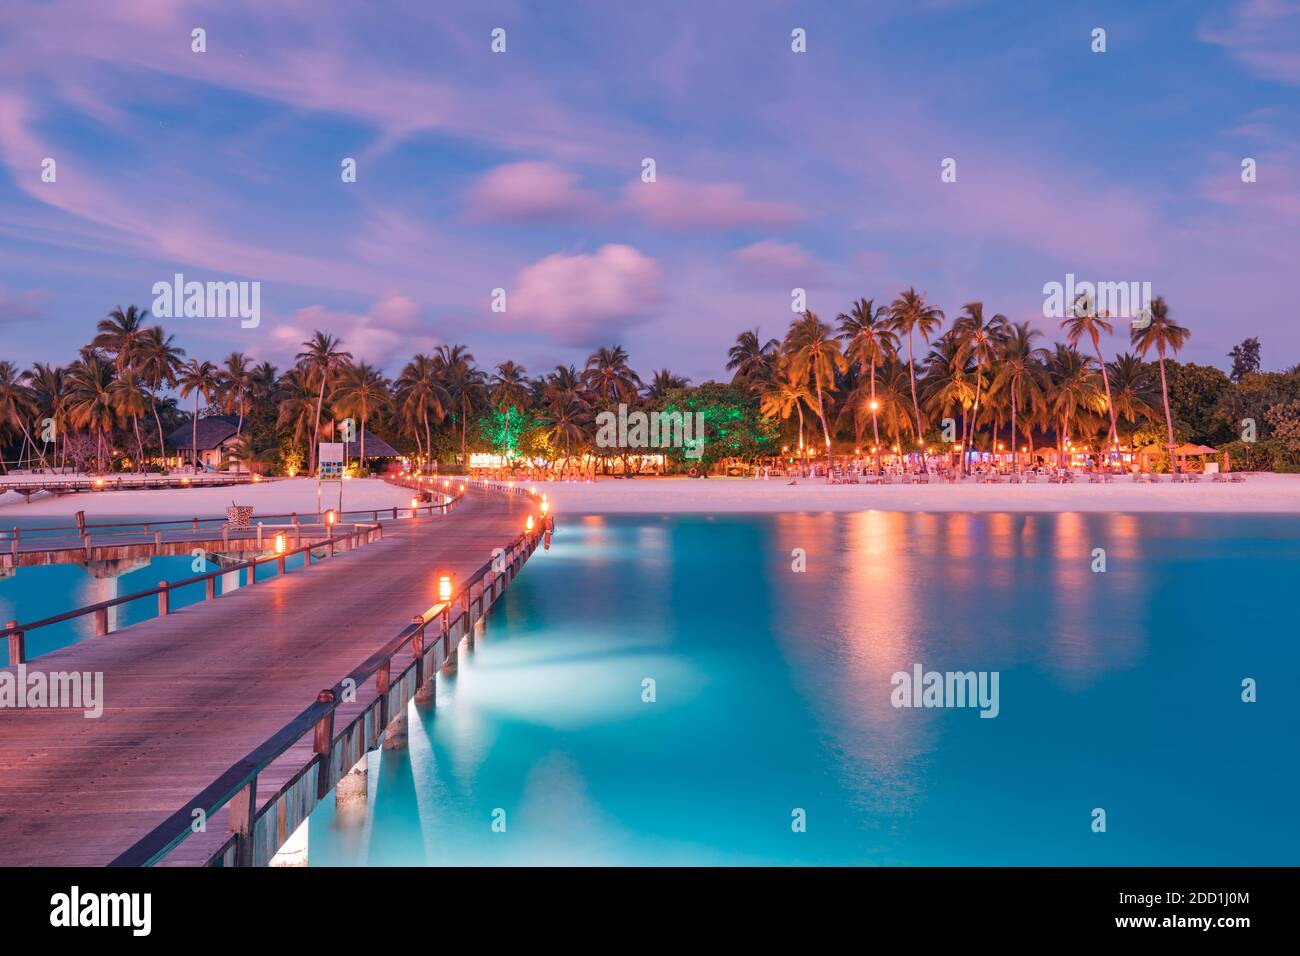 Incroyable coucher de ciel et la réflexion sur une mer calme, plage de luxe Maldives paysage de bungalows sur pilotis. Les paysages exotiques de l'été et de vacances Maison de vacances Banque D'Images